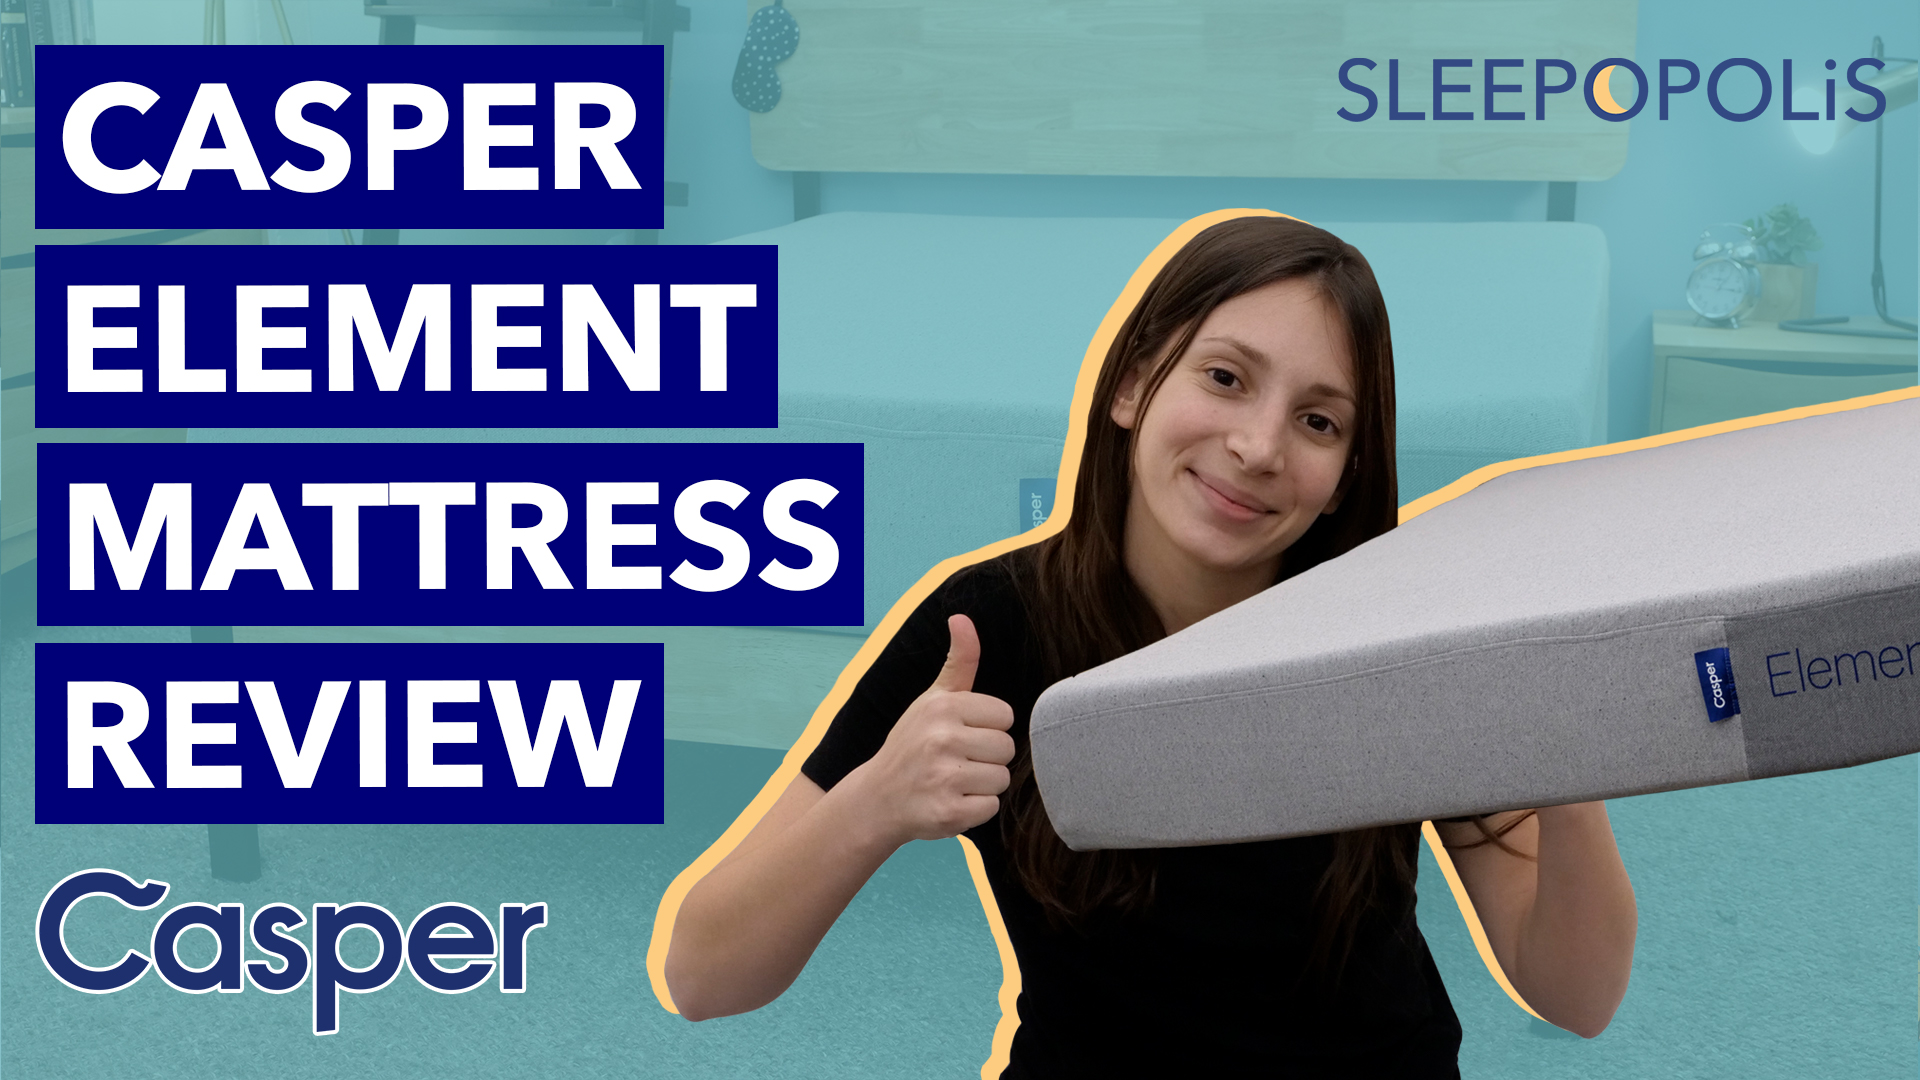 casper element mattress review reddit